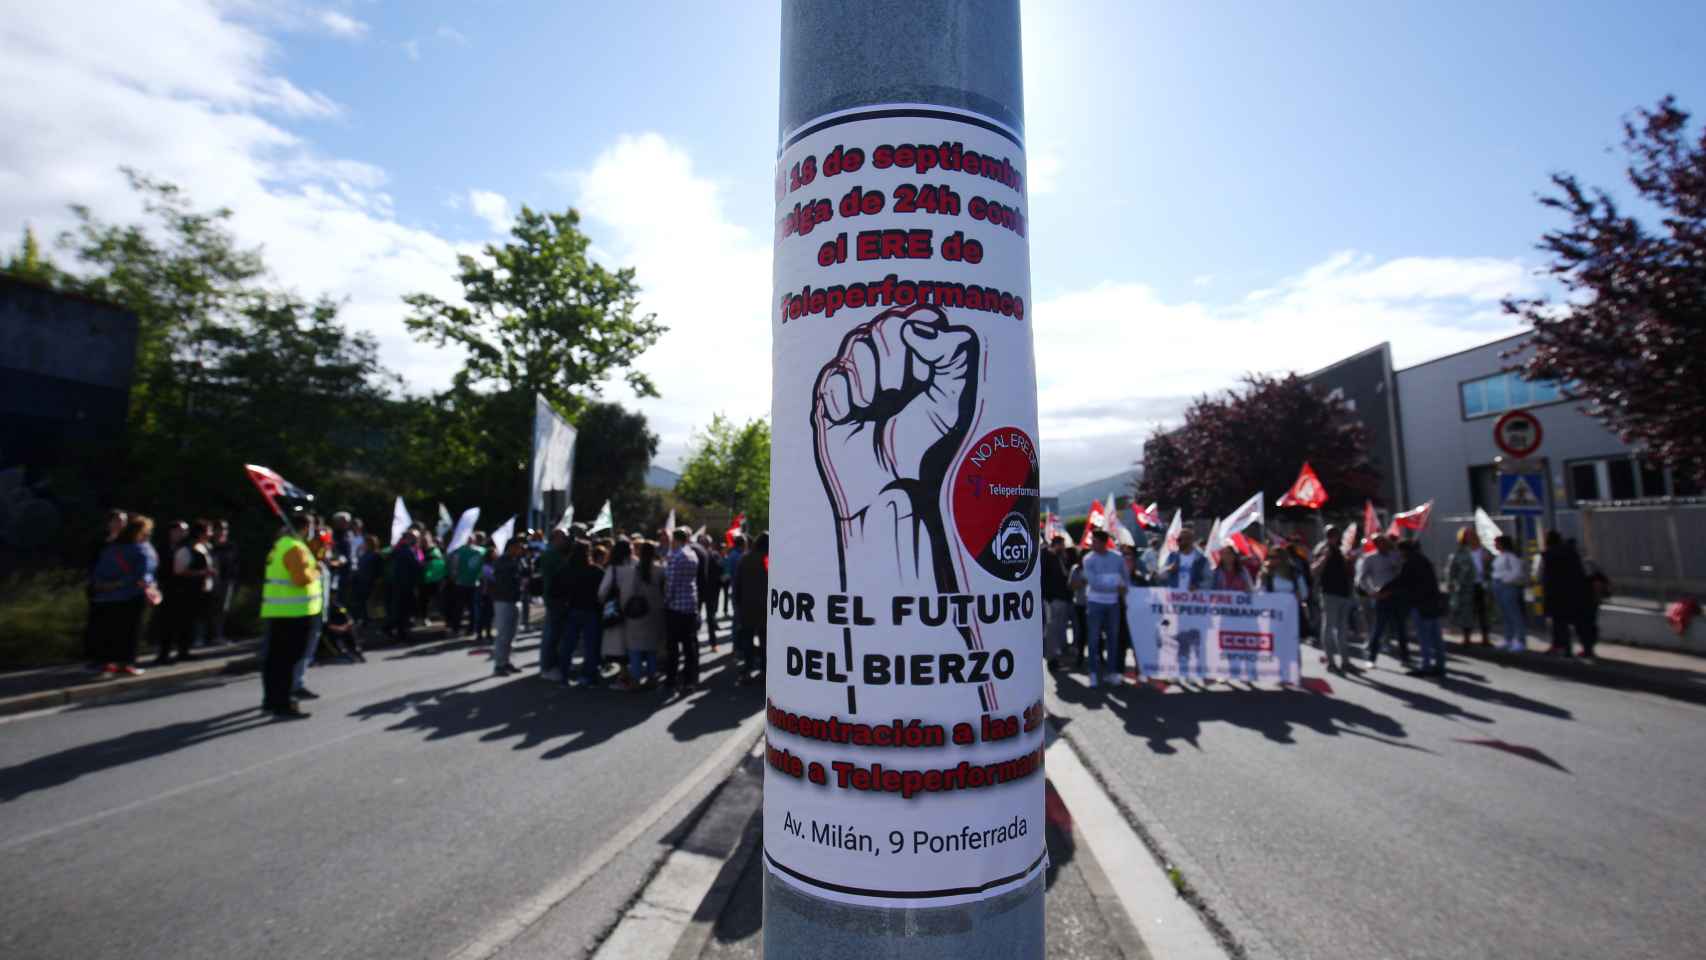 Imagen de la jornada de huelga de los trabajadores de Teleperformance Ponferrada.